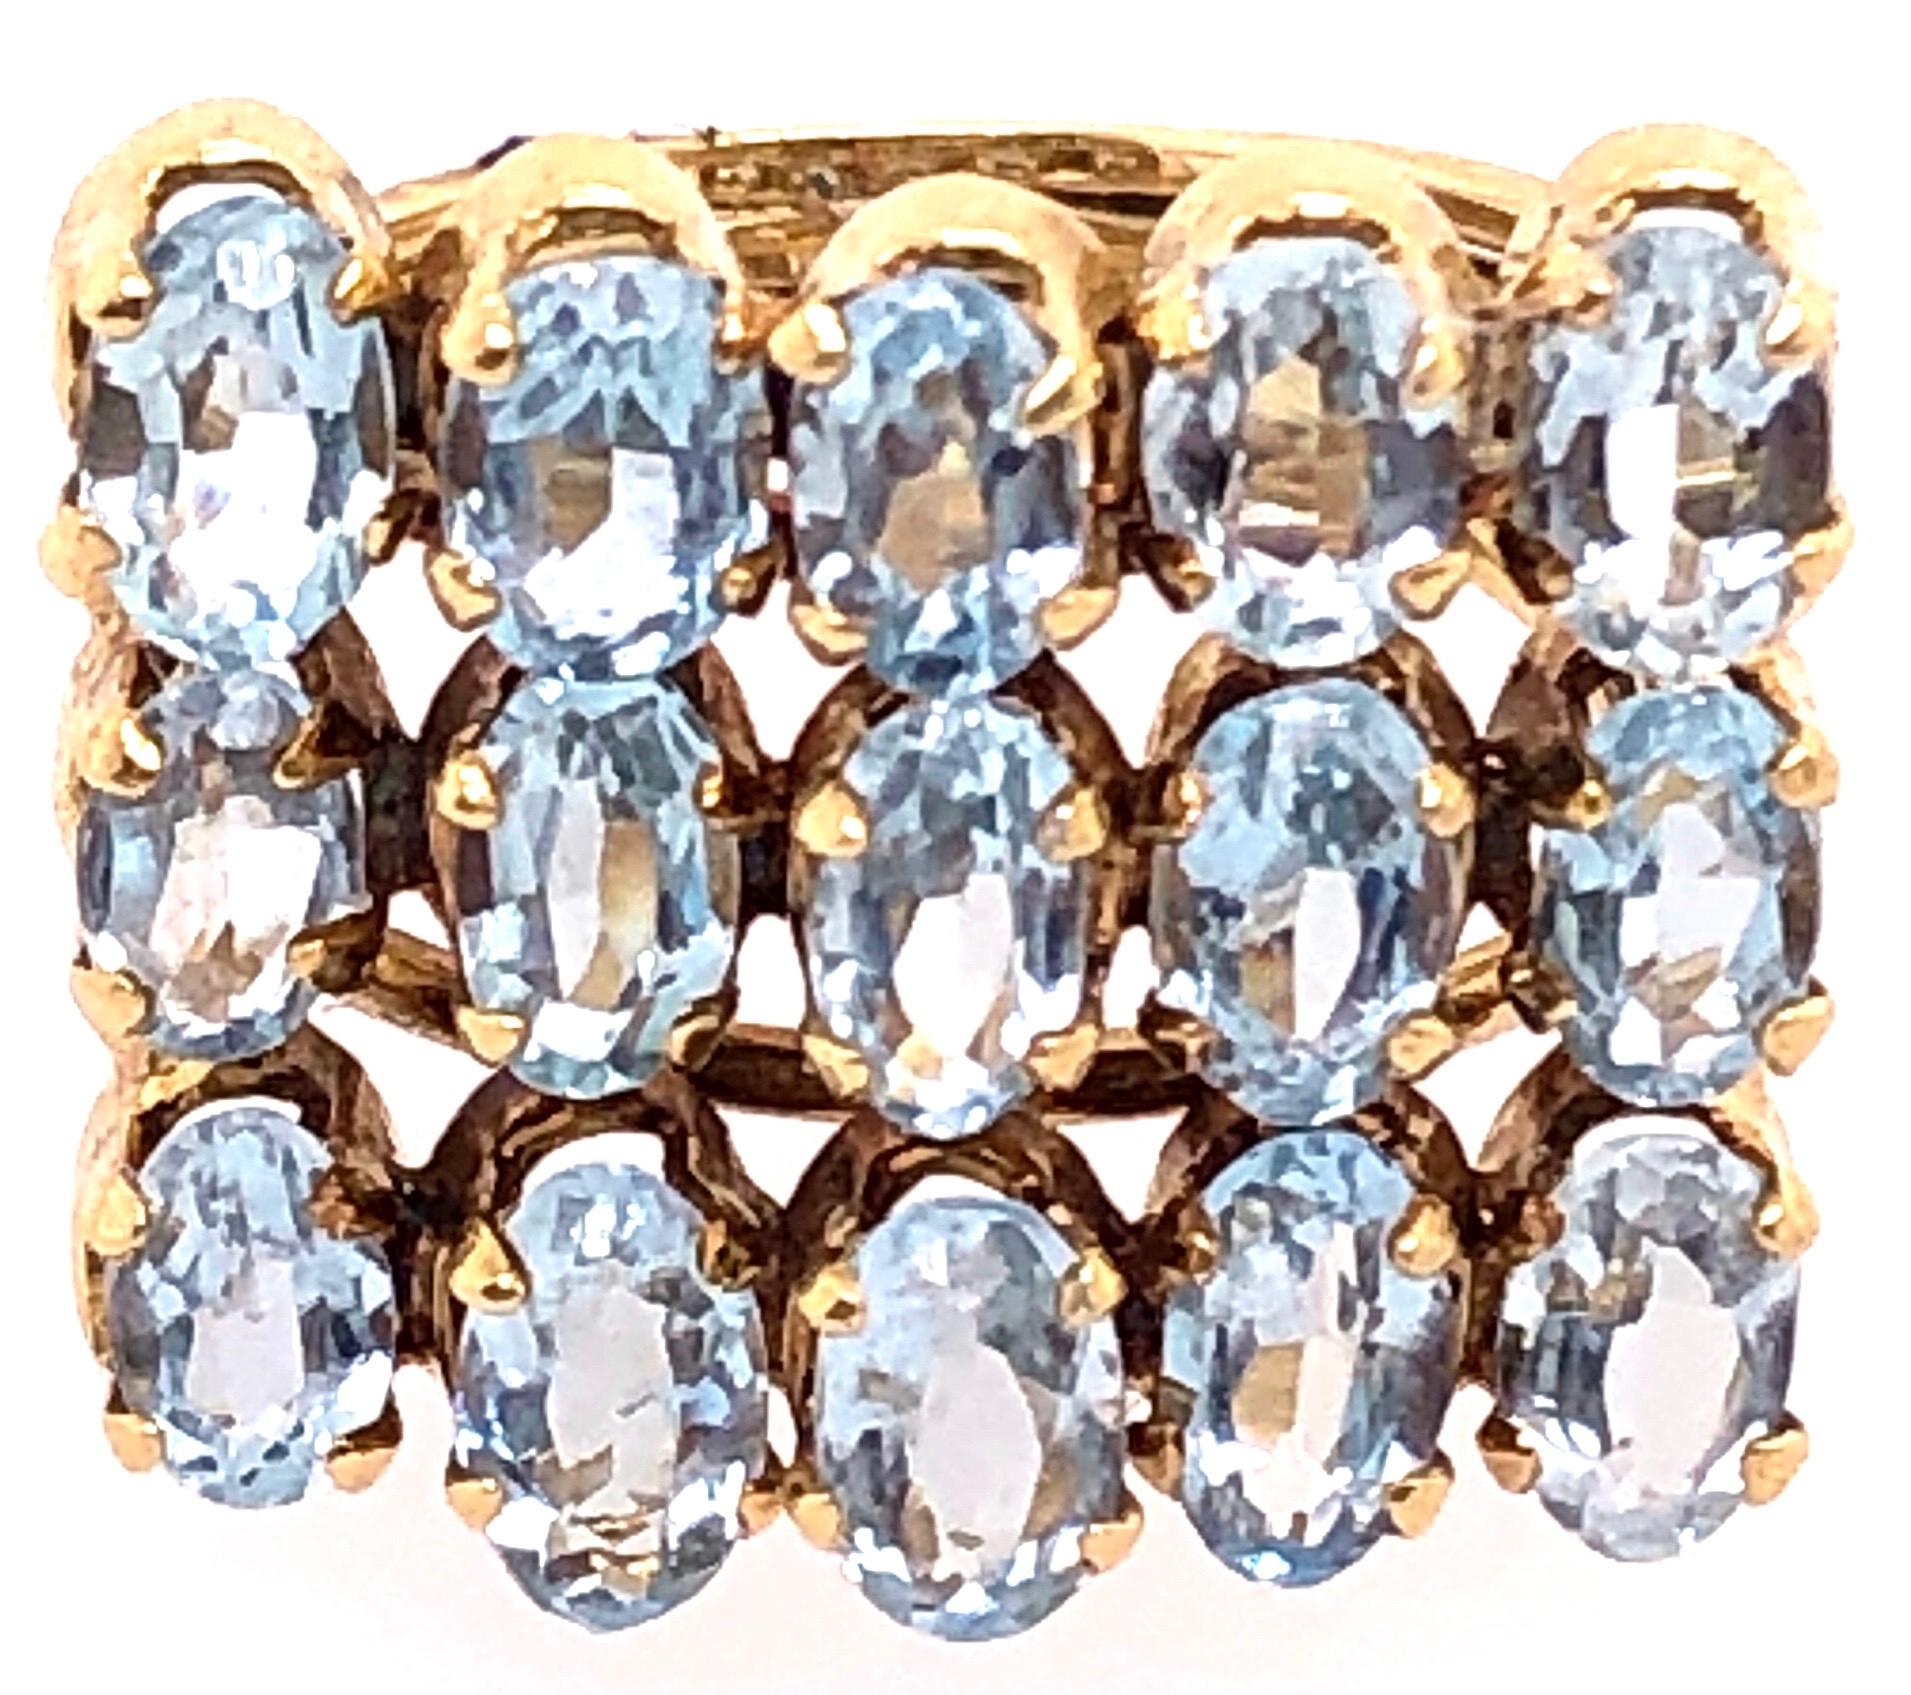 14 Karat Yellow Gold Fashion Blue Topaz Ring.
Size 5.5
6.42 grams total weight.